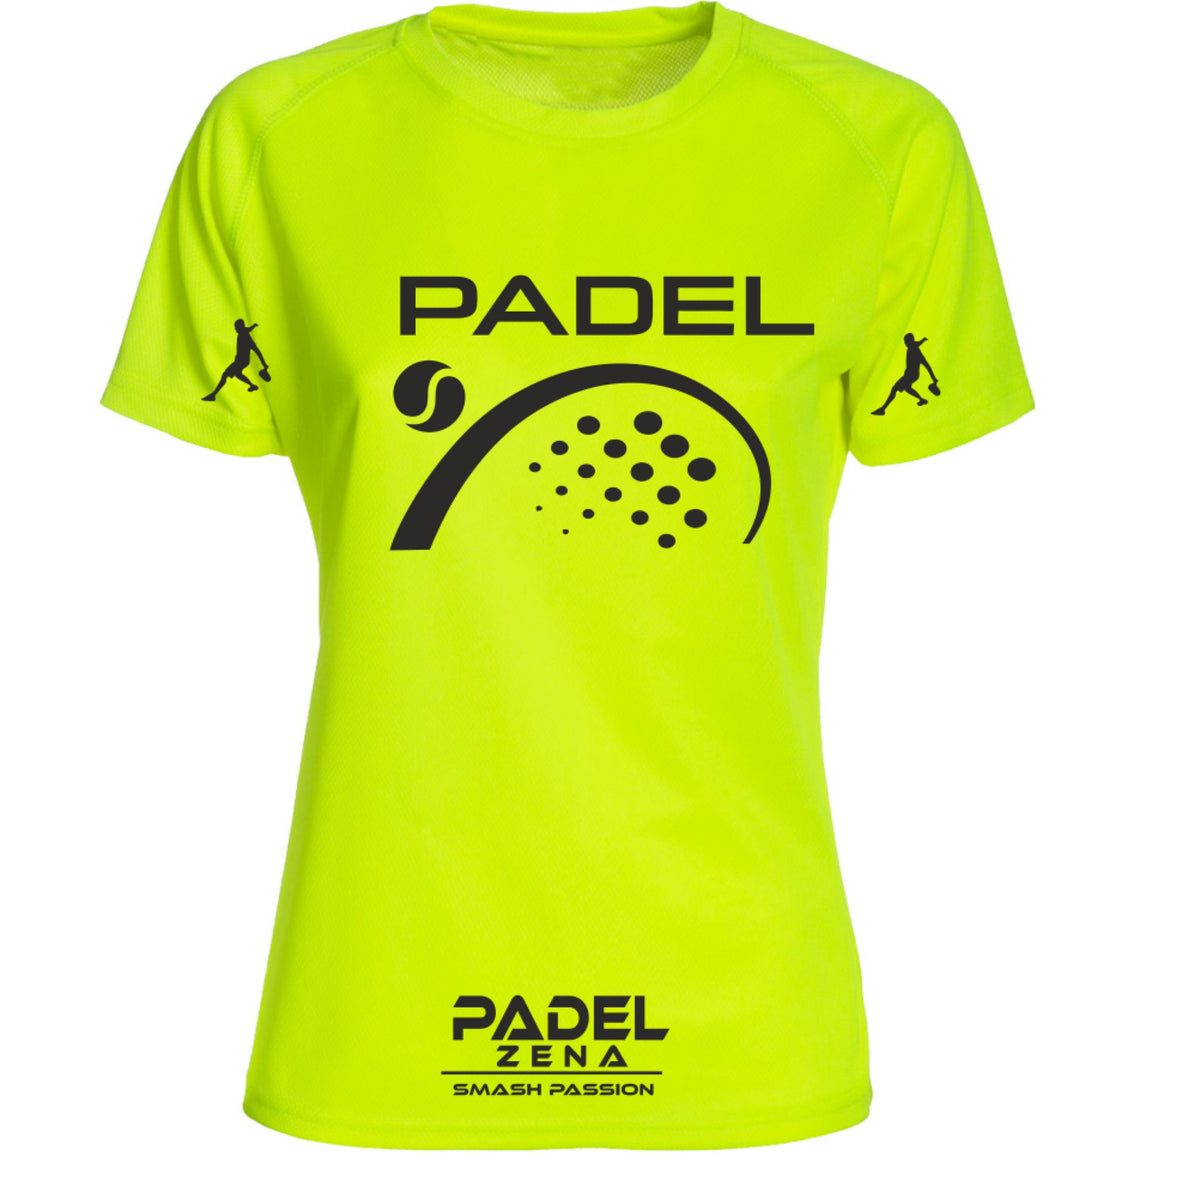 T-Shirt Padel Woman - Padel2